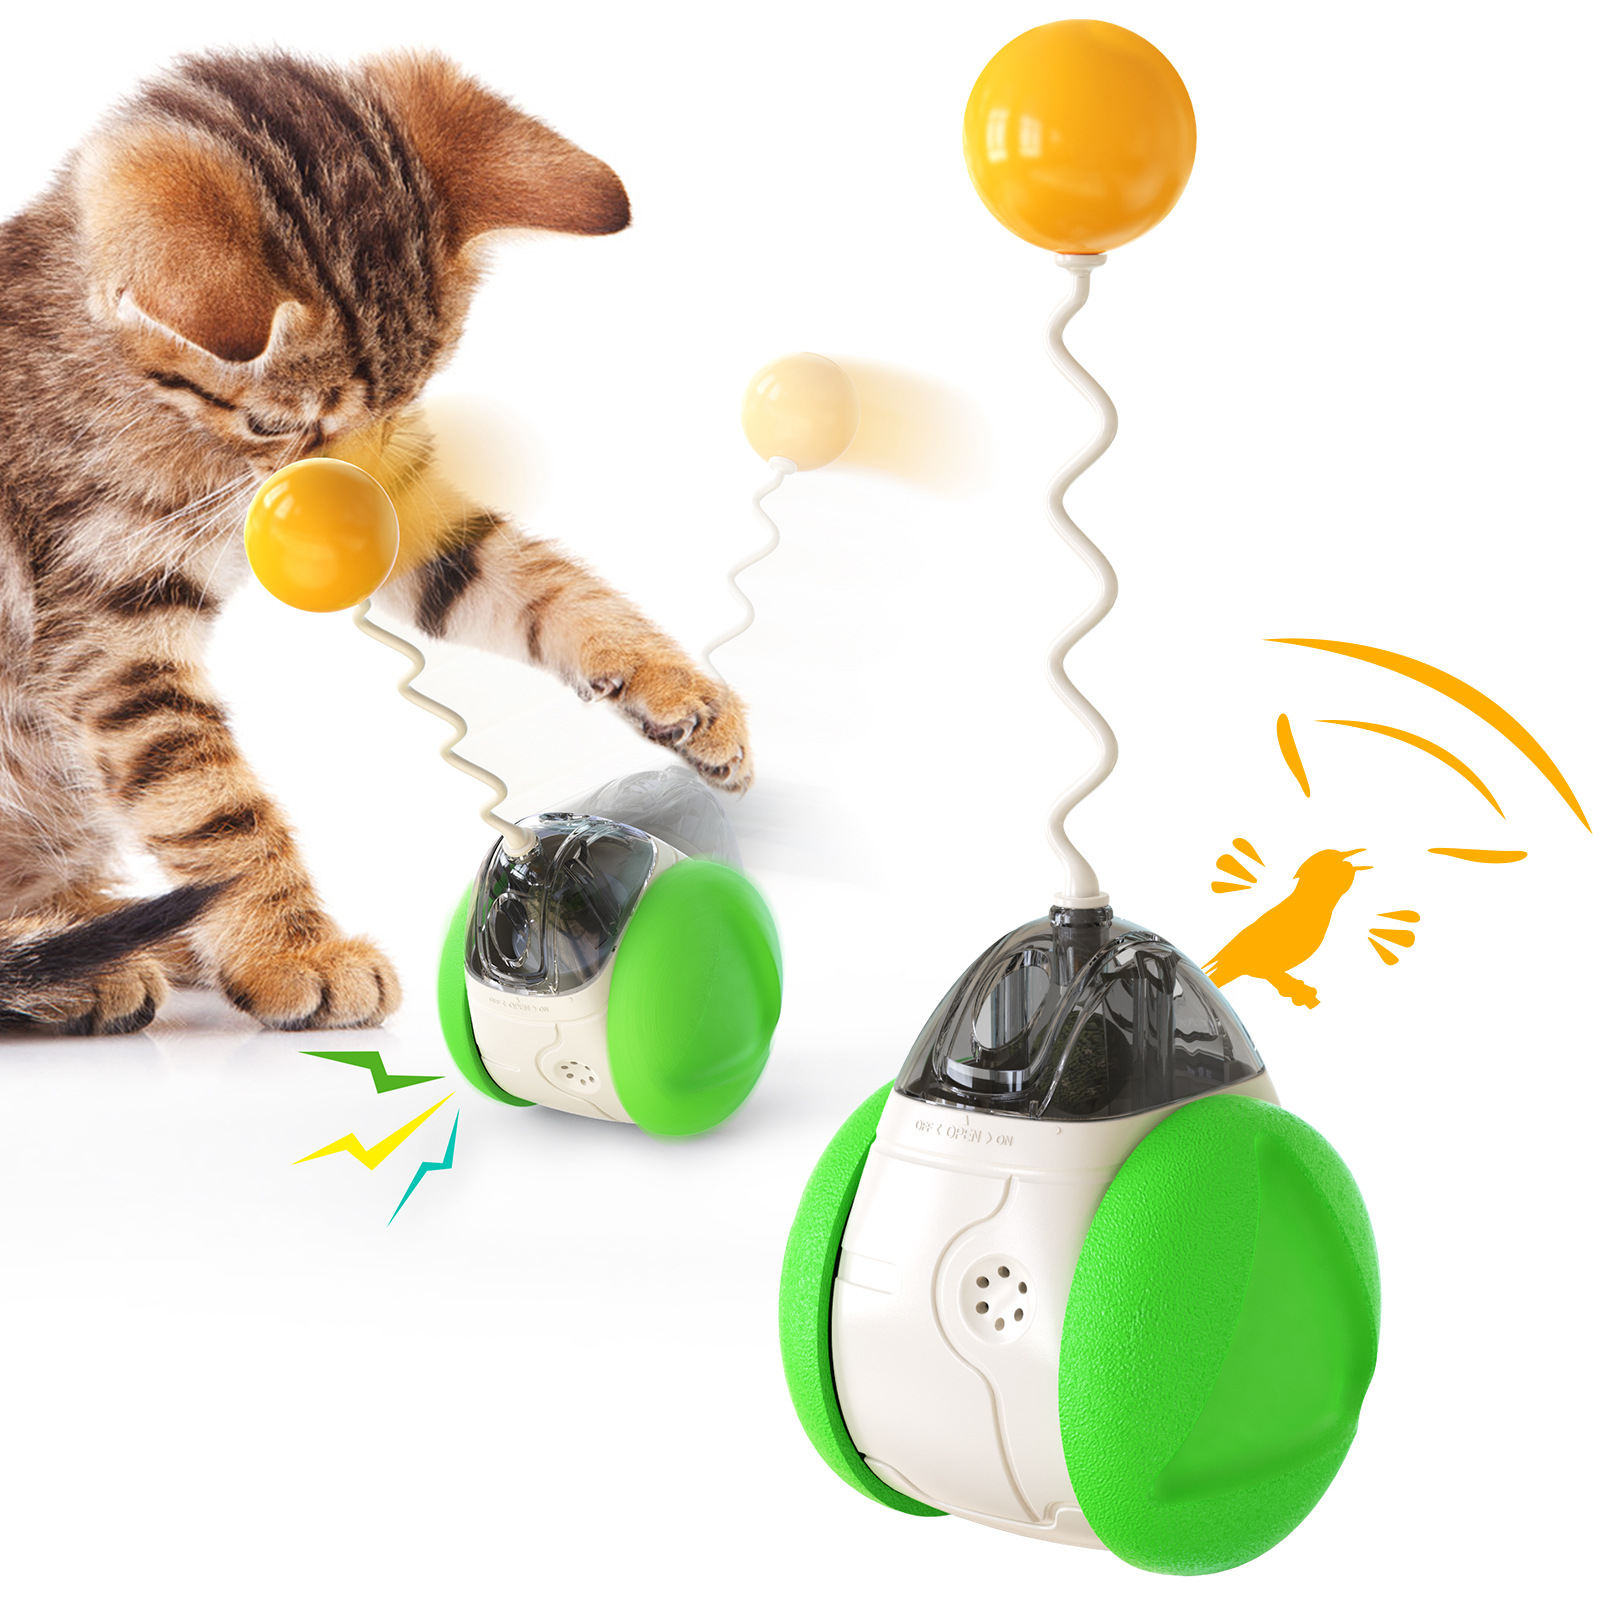 新款宠物用品发声平衡车猫咪自嗨玩具解闷吸引猫咪注意力提高智力猫咪宠物玩具详情7